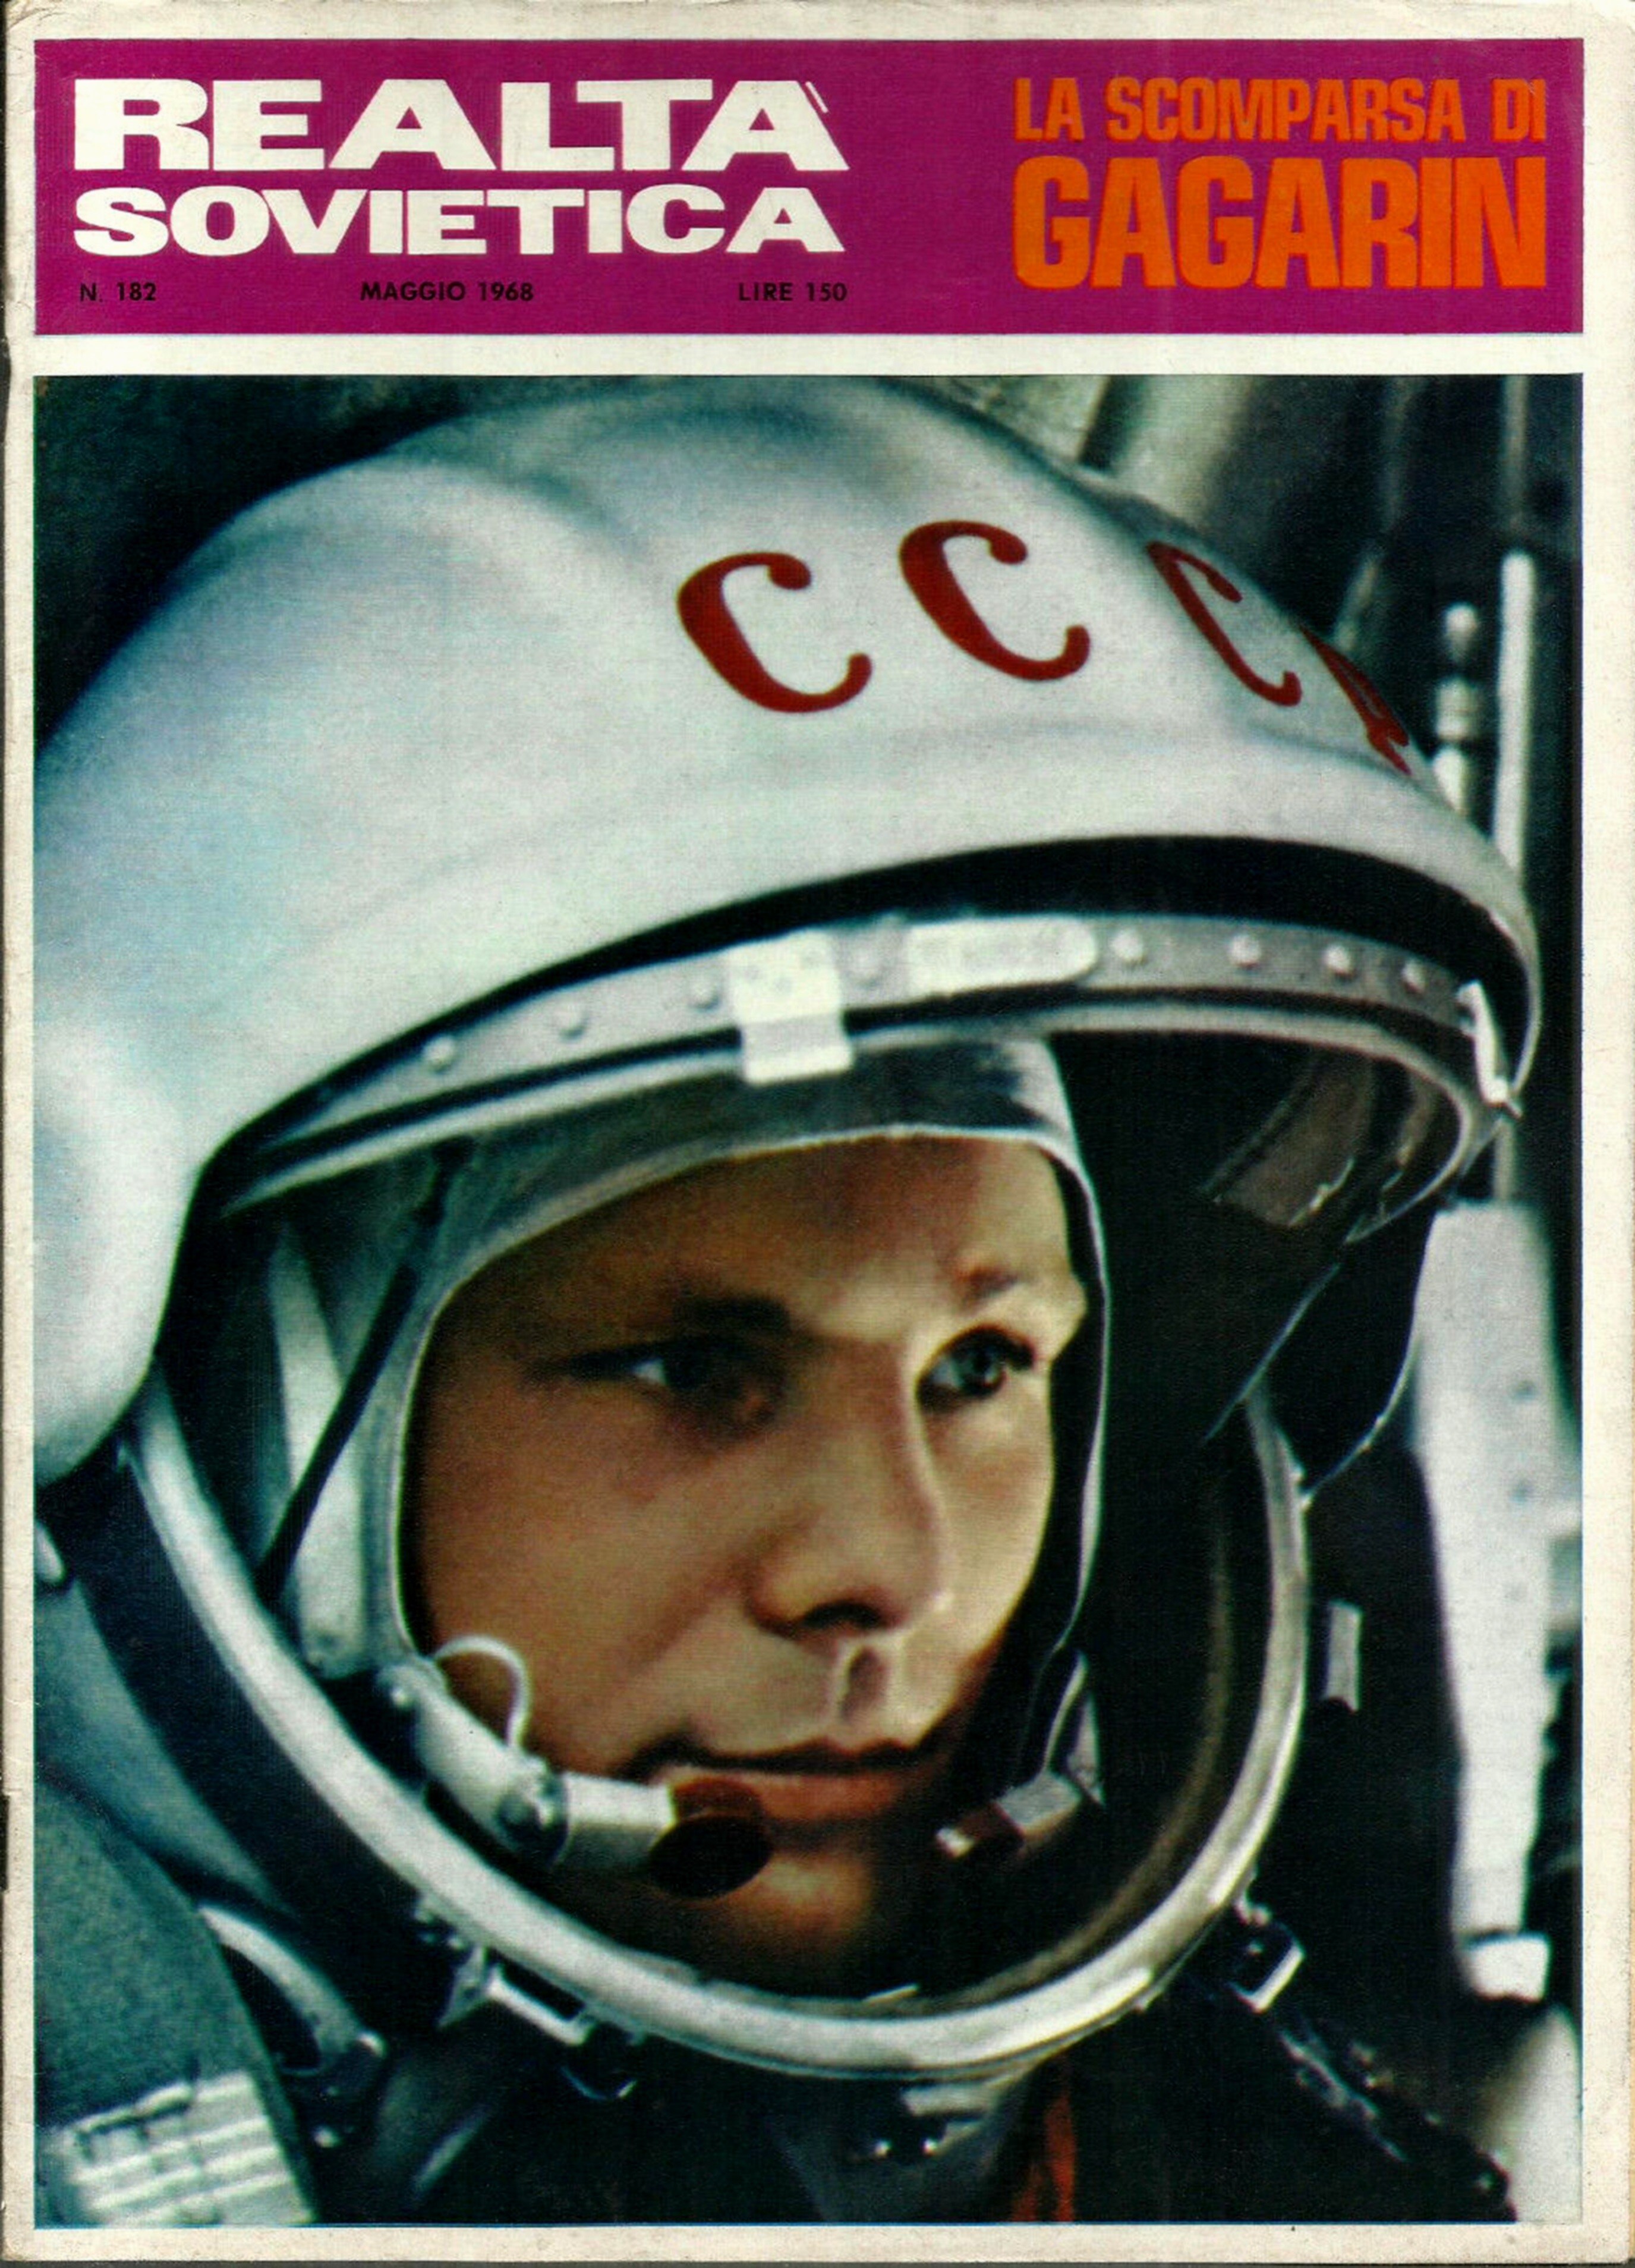 Il mito Jurij Gagarin su una rivista che annuncia la sua scomparsa